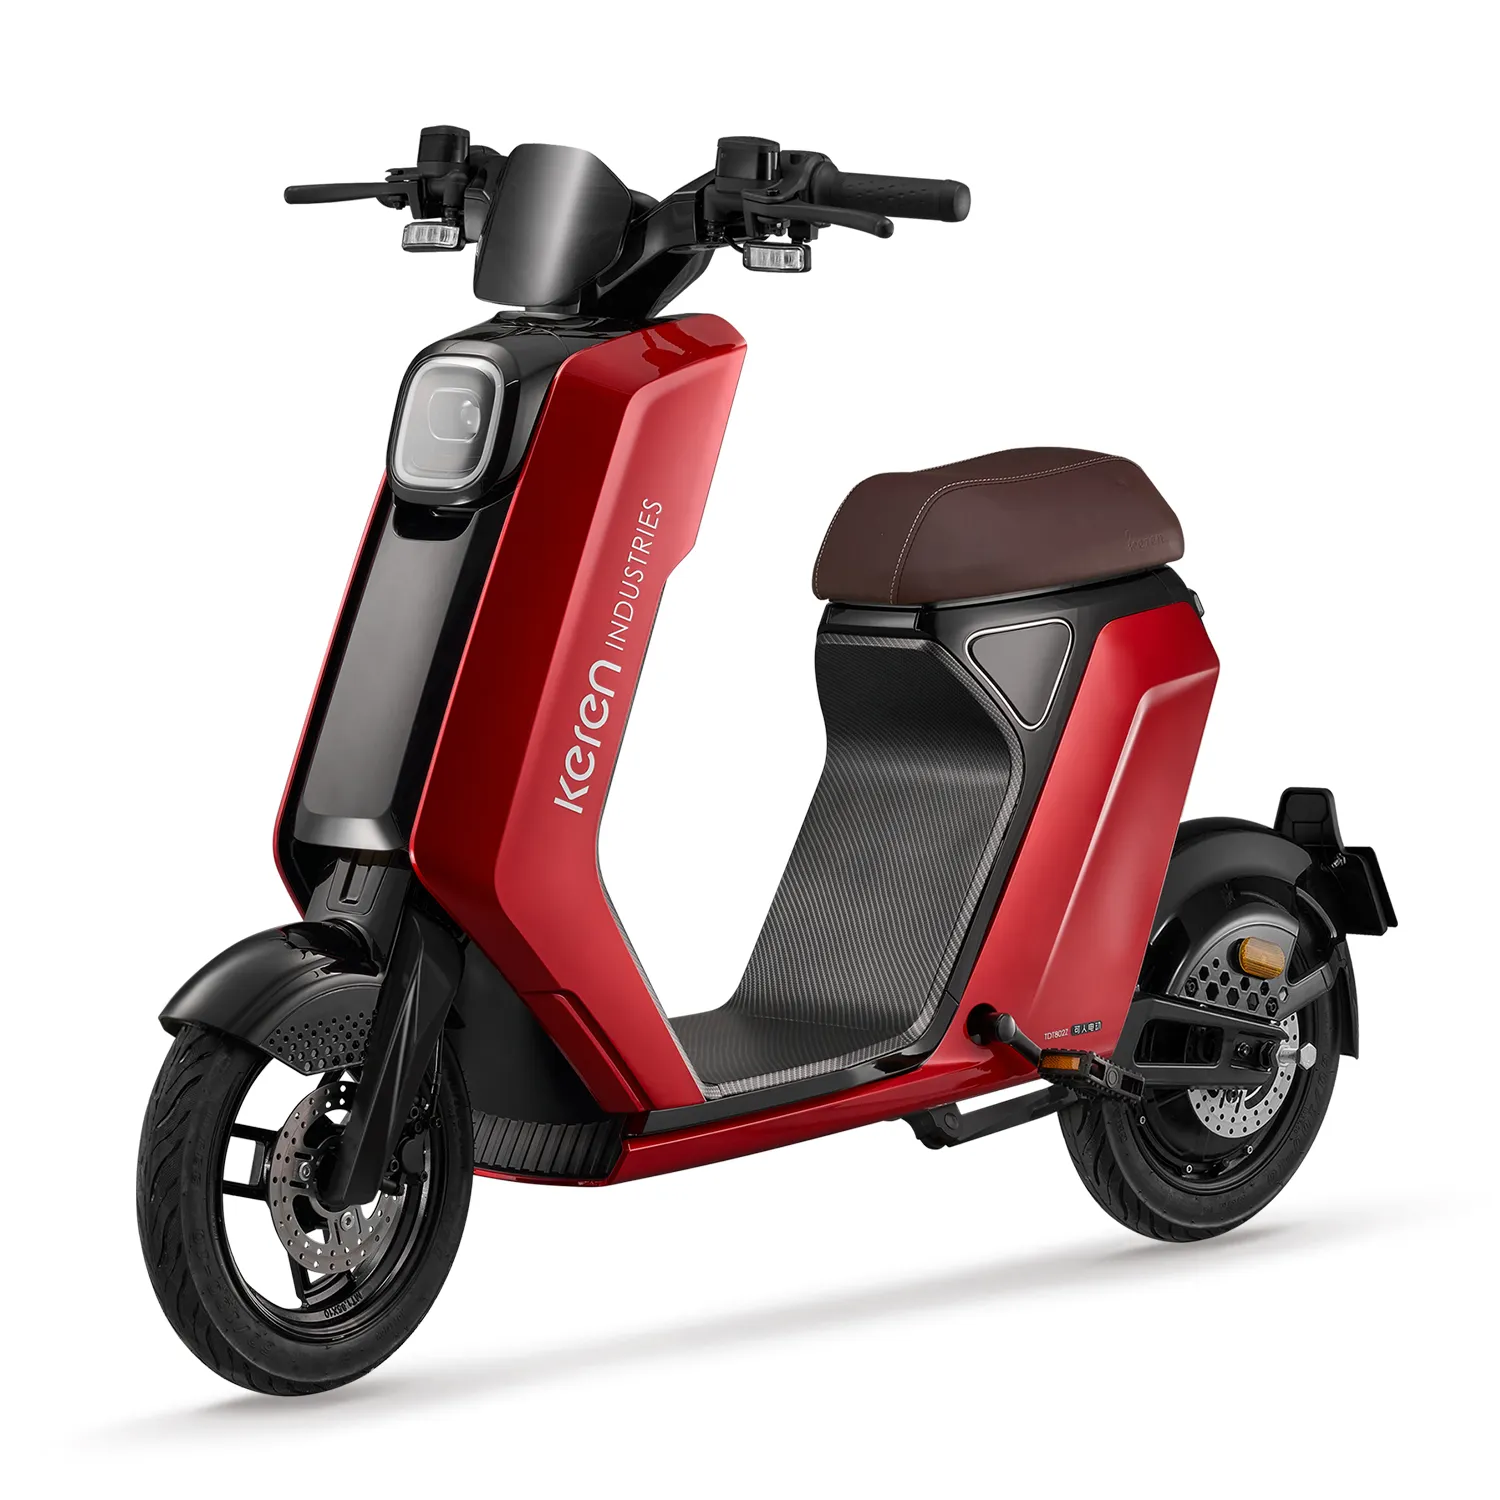 Motocicleta eléctrica para adultos, ciclomotor con batería de litio de 48V y 24Ah